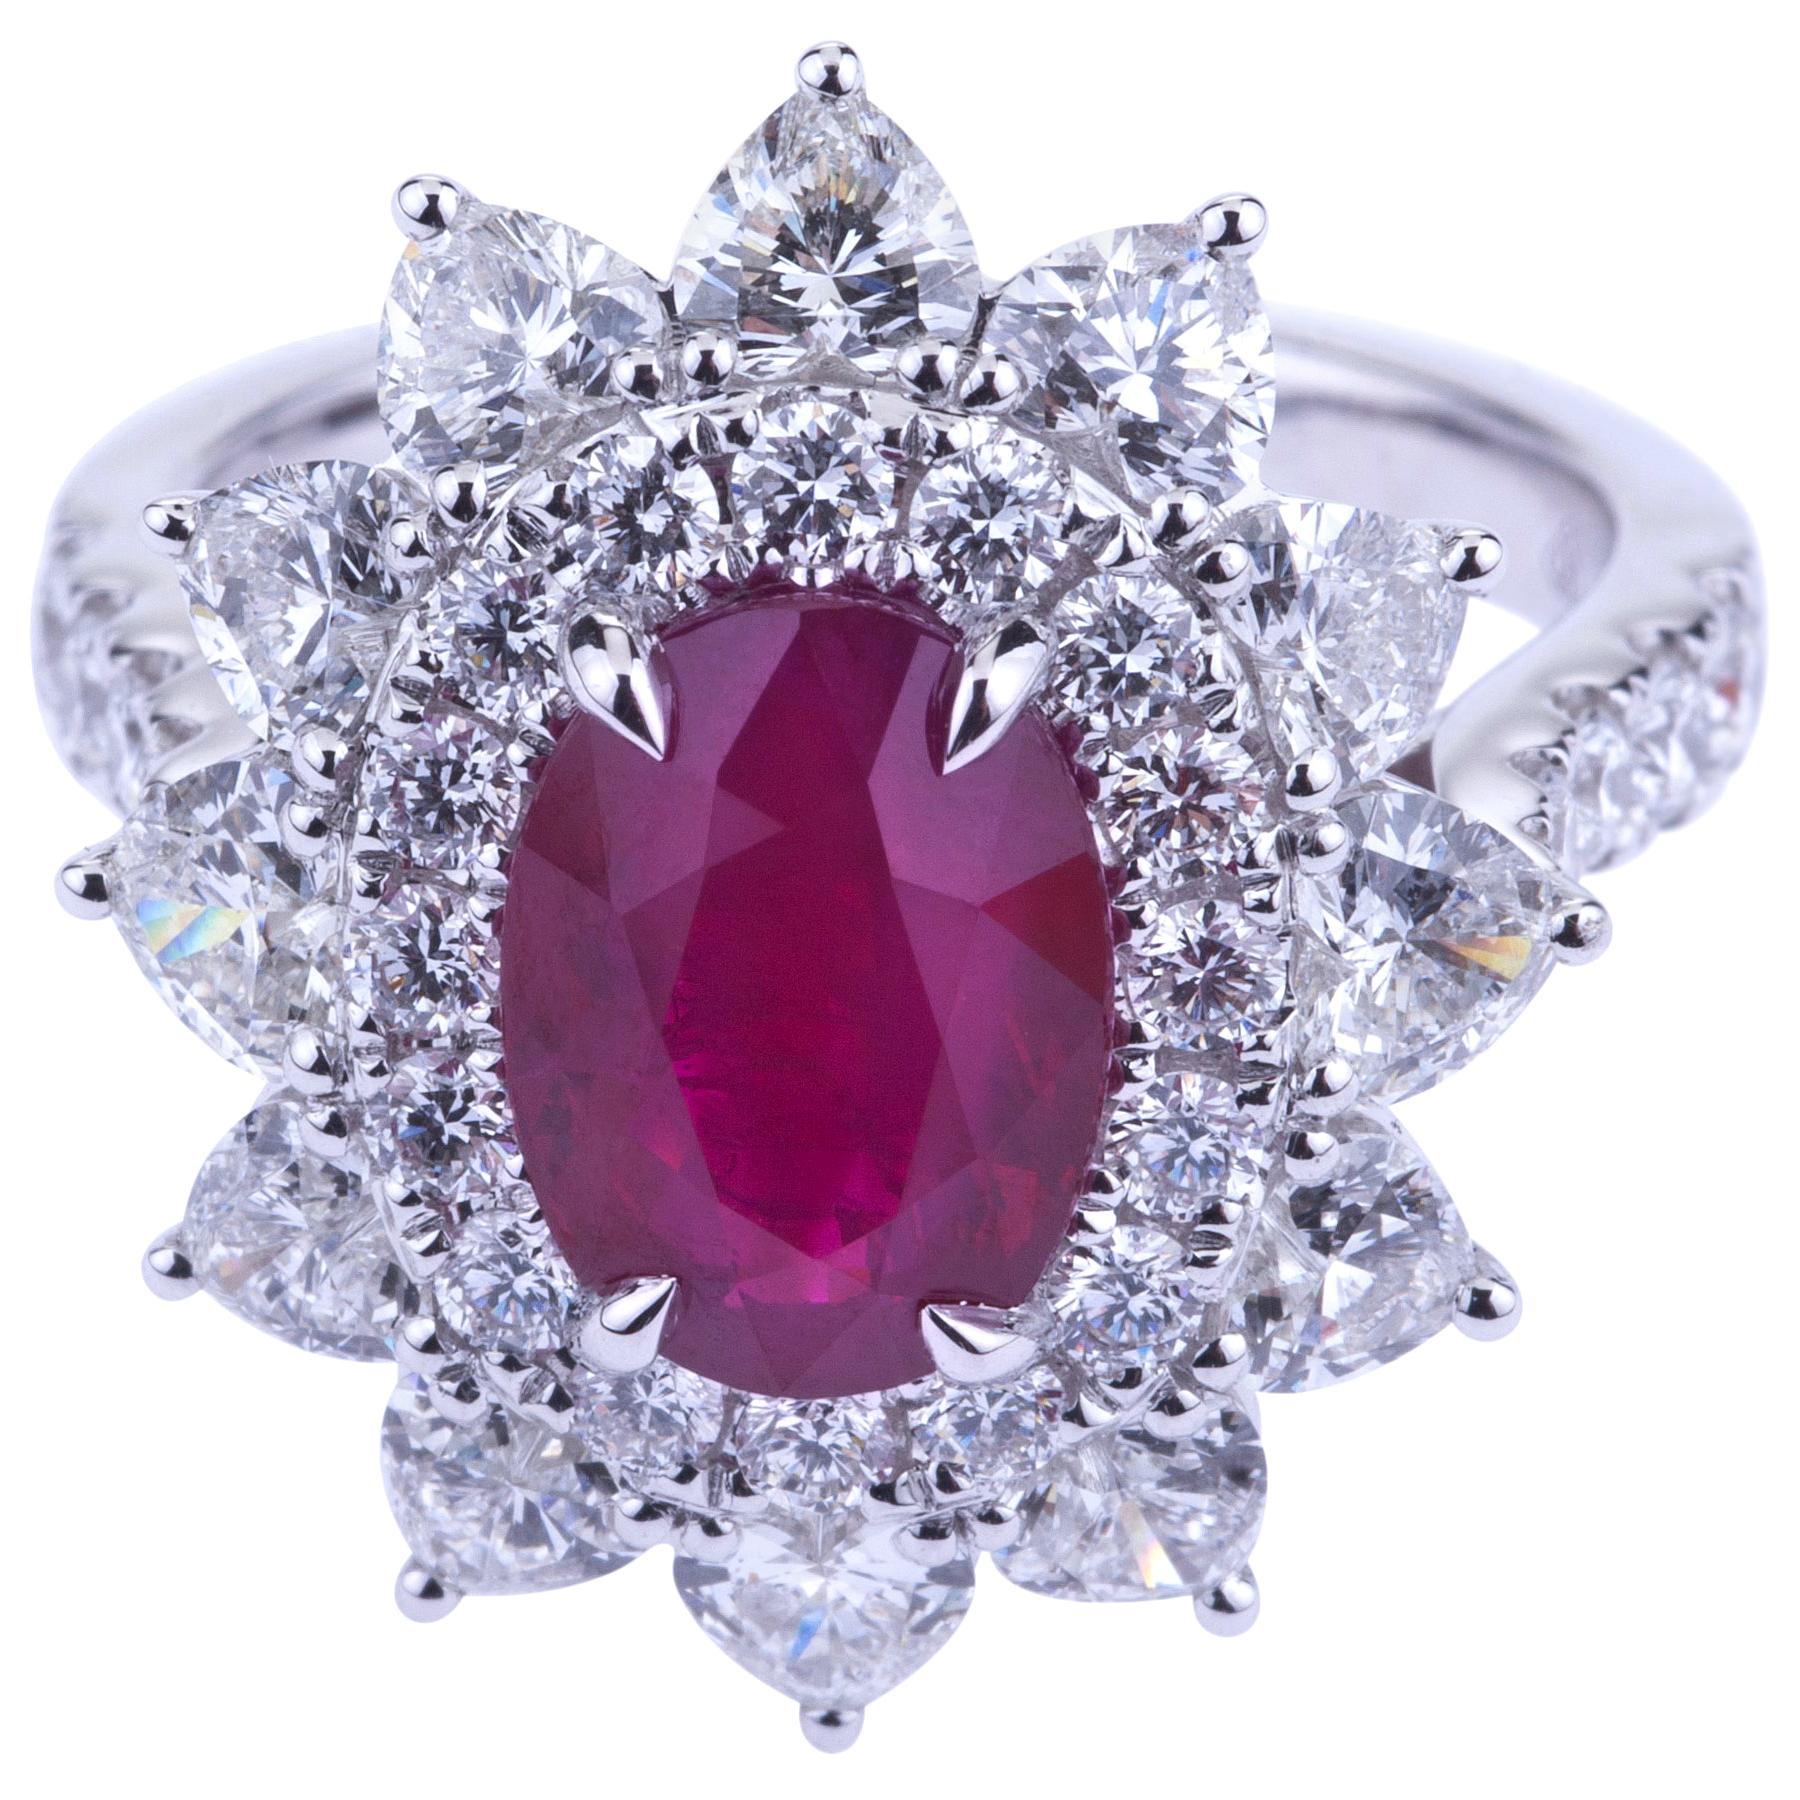 Oval Burma Rubin mit Herz Diamanten Weißgold Ring mit Zertifikat.
Elegantes innovatives Design für diesen Ring mit einem atemberaubenden ovalen Rubin (ct. 3,27 Zertifikat GRS lebendige rote Art 